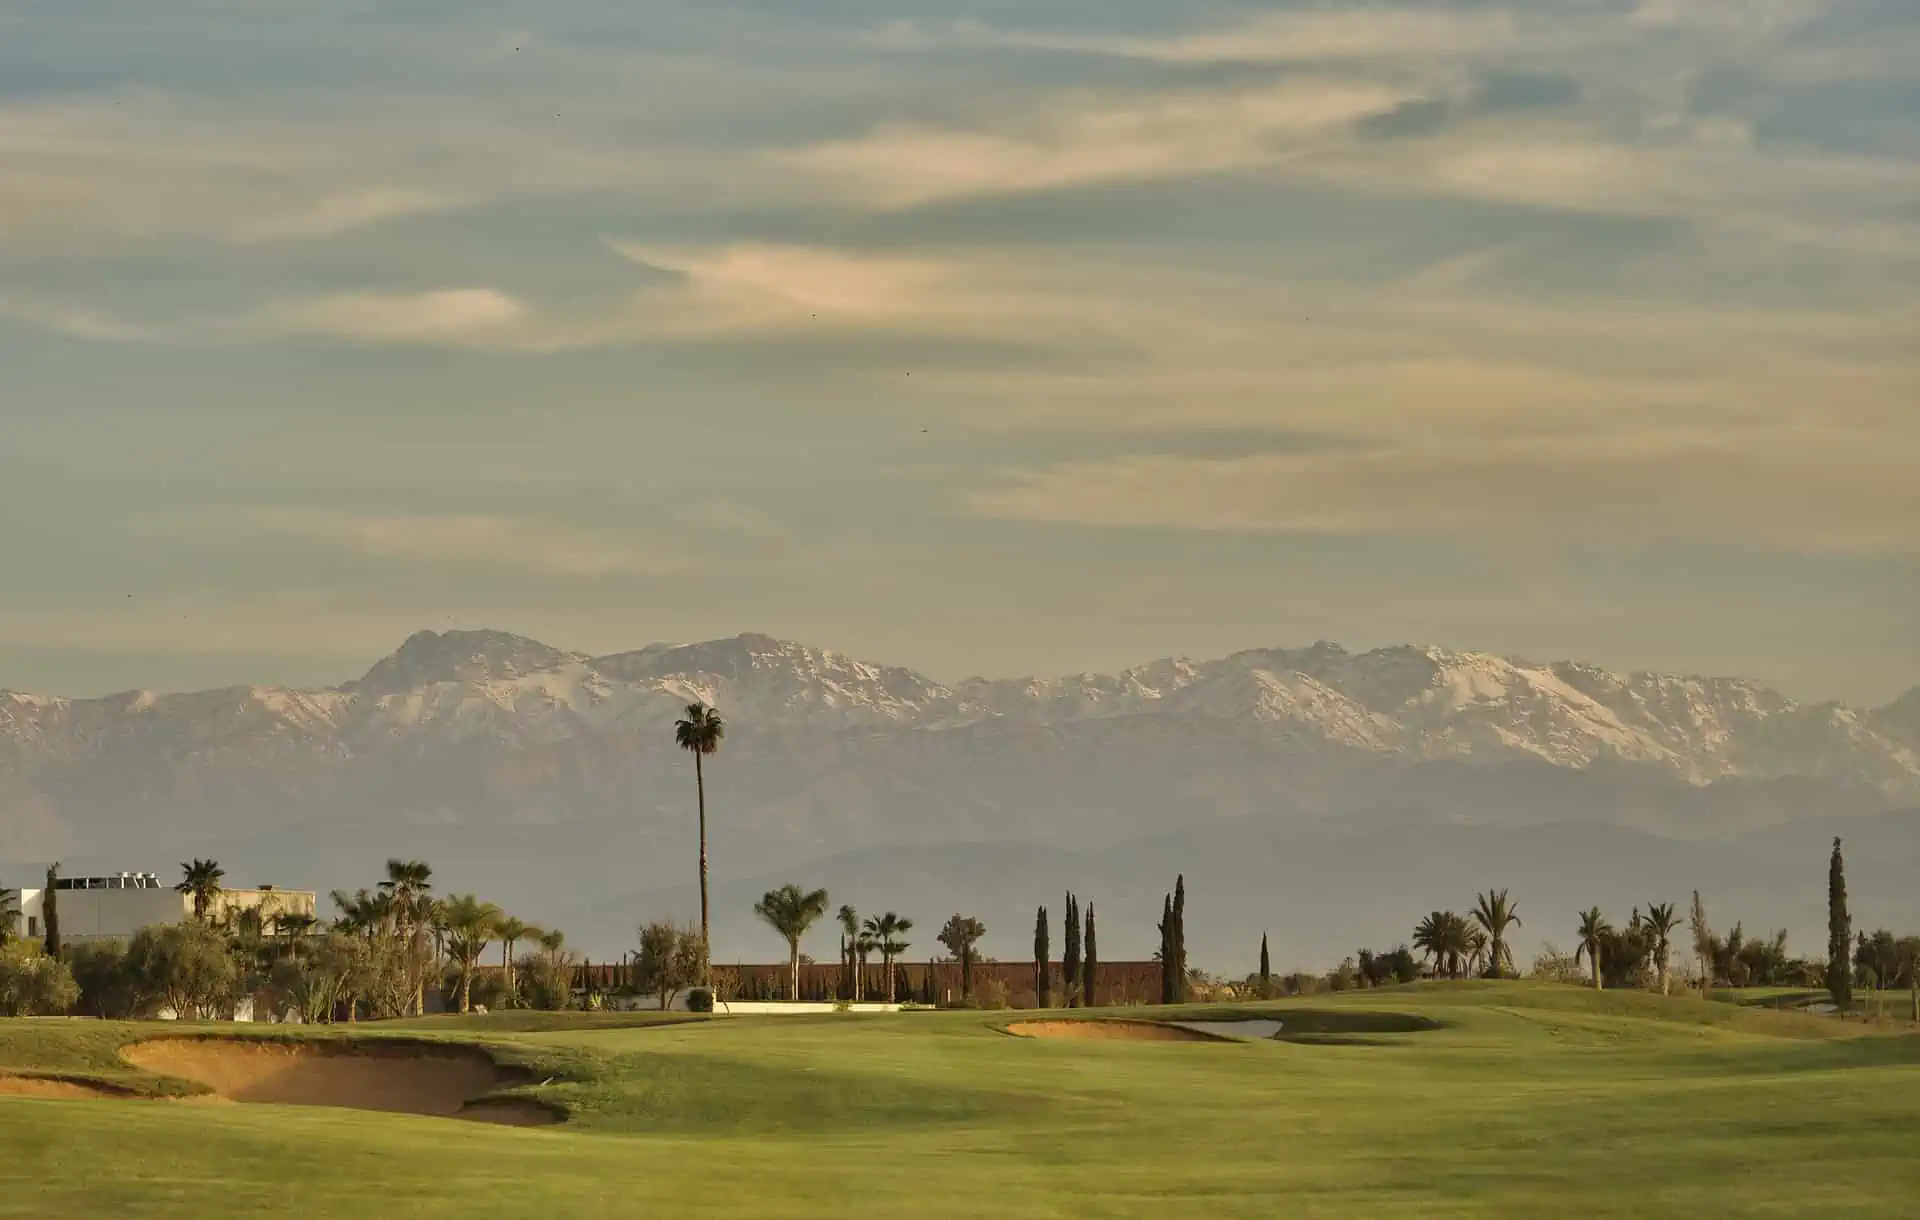 The Atlas Mountains and the Al Maaden Golf Course Marrakech in Morocco.